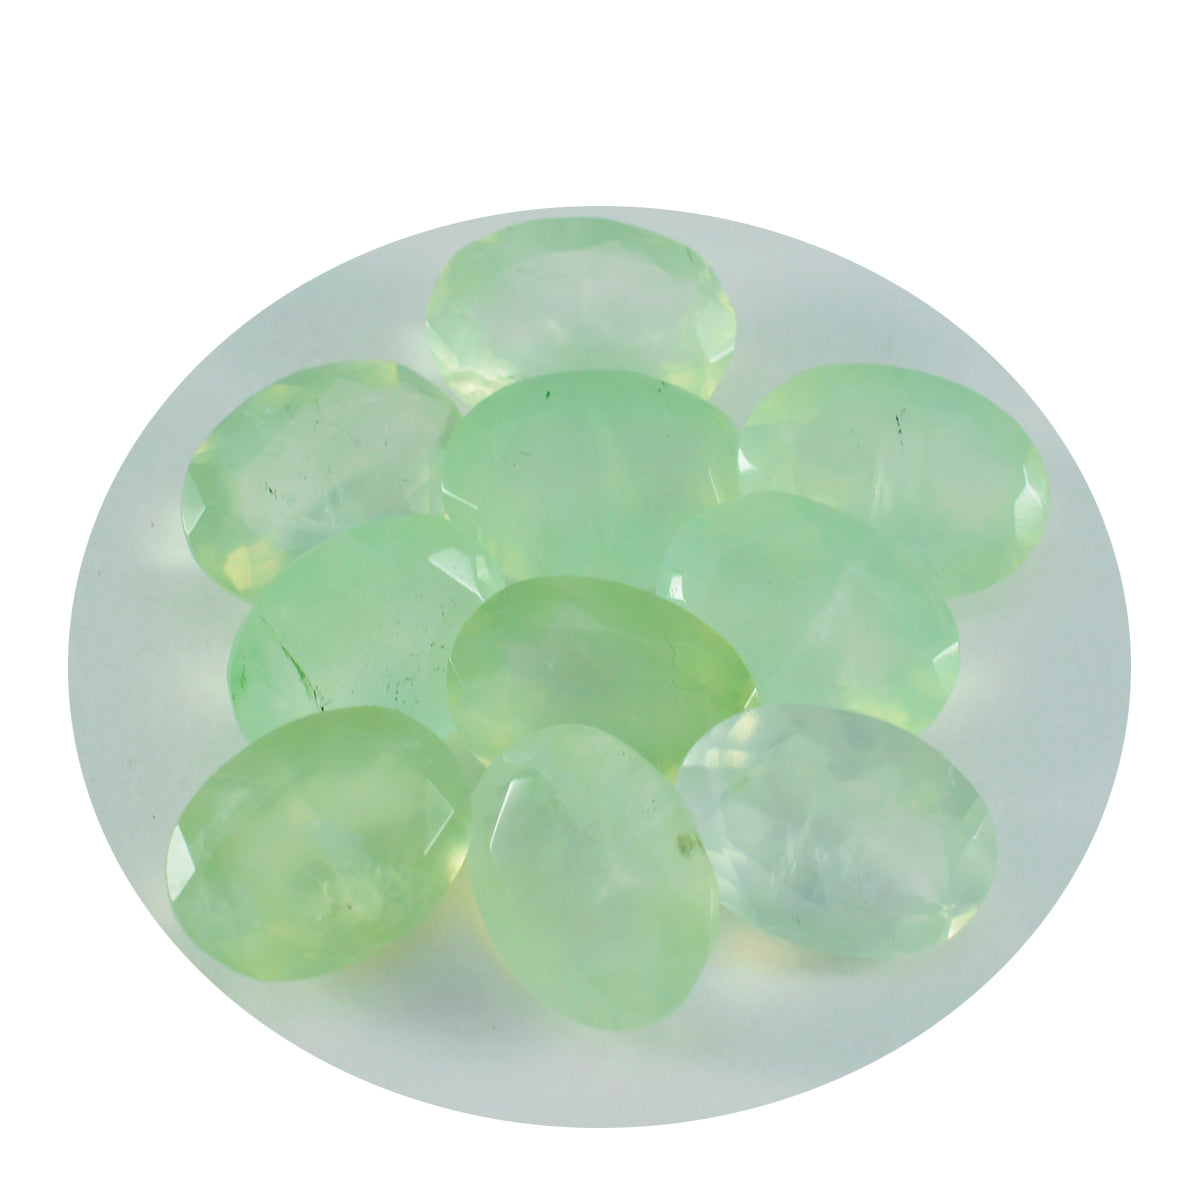 Riyogems 1 Stück grüner Prehnit, facettiert, 8 x 10 mm, ovale Form, gut aussehender, hochwertiger loser Stein